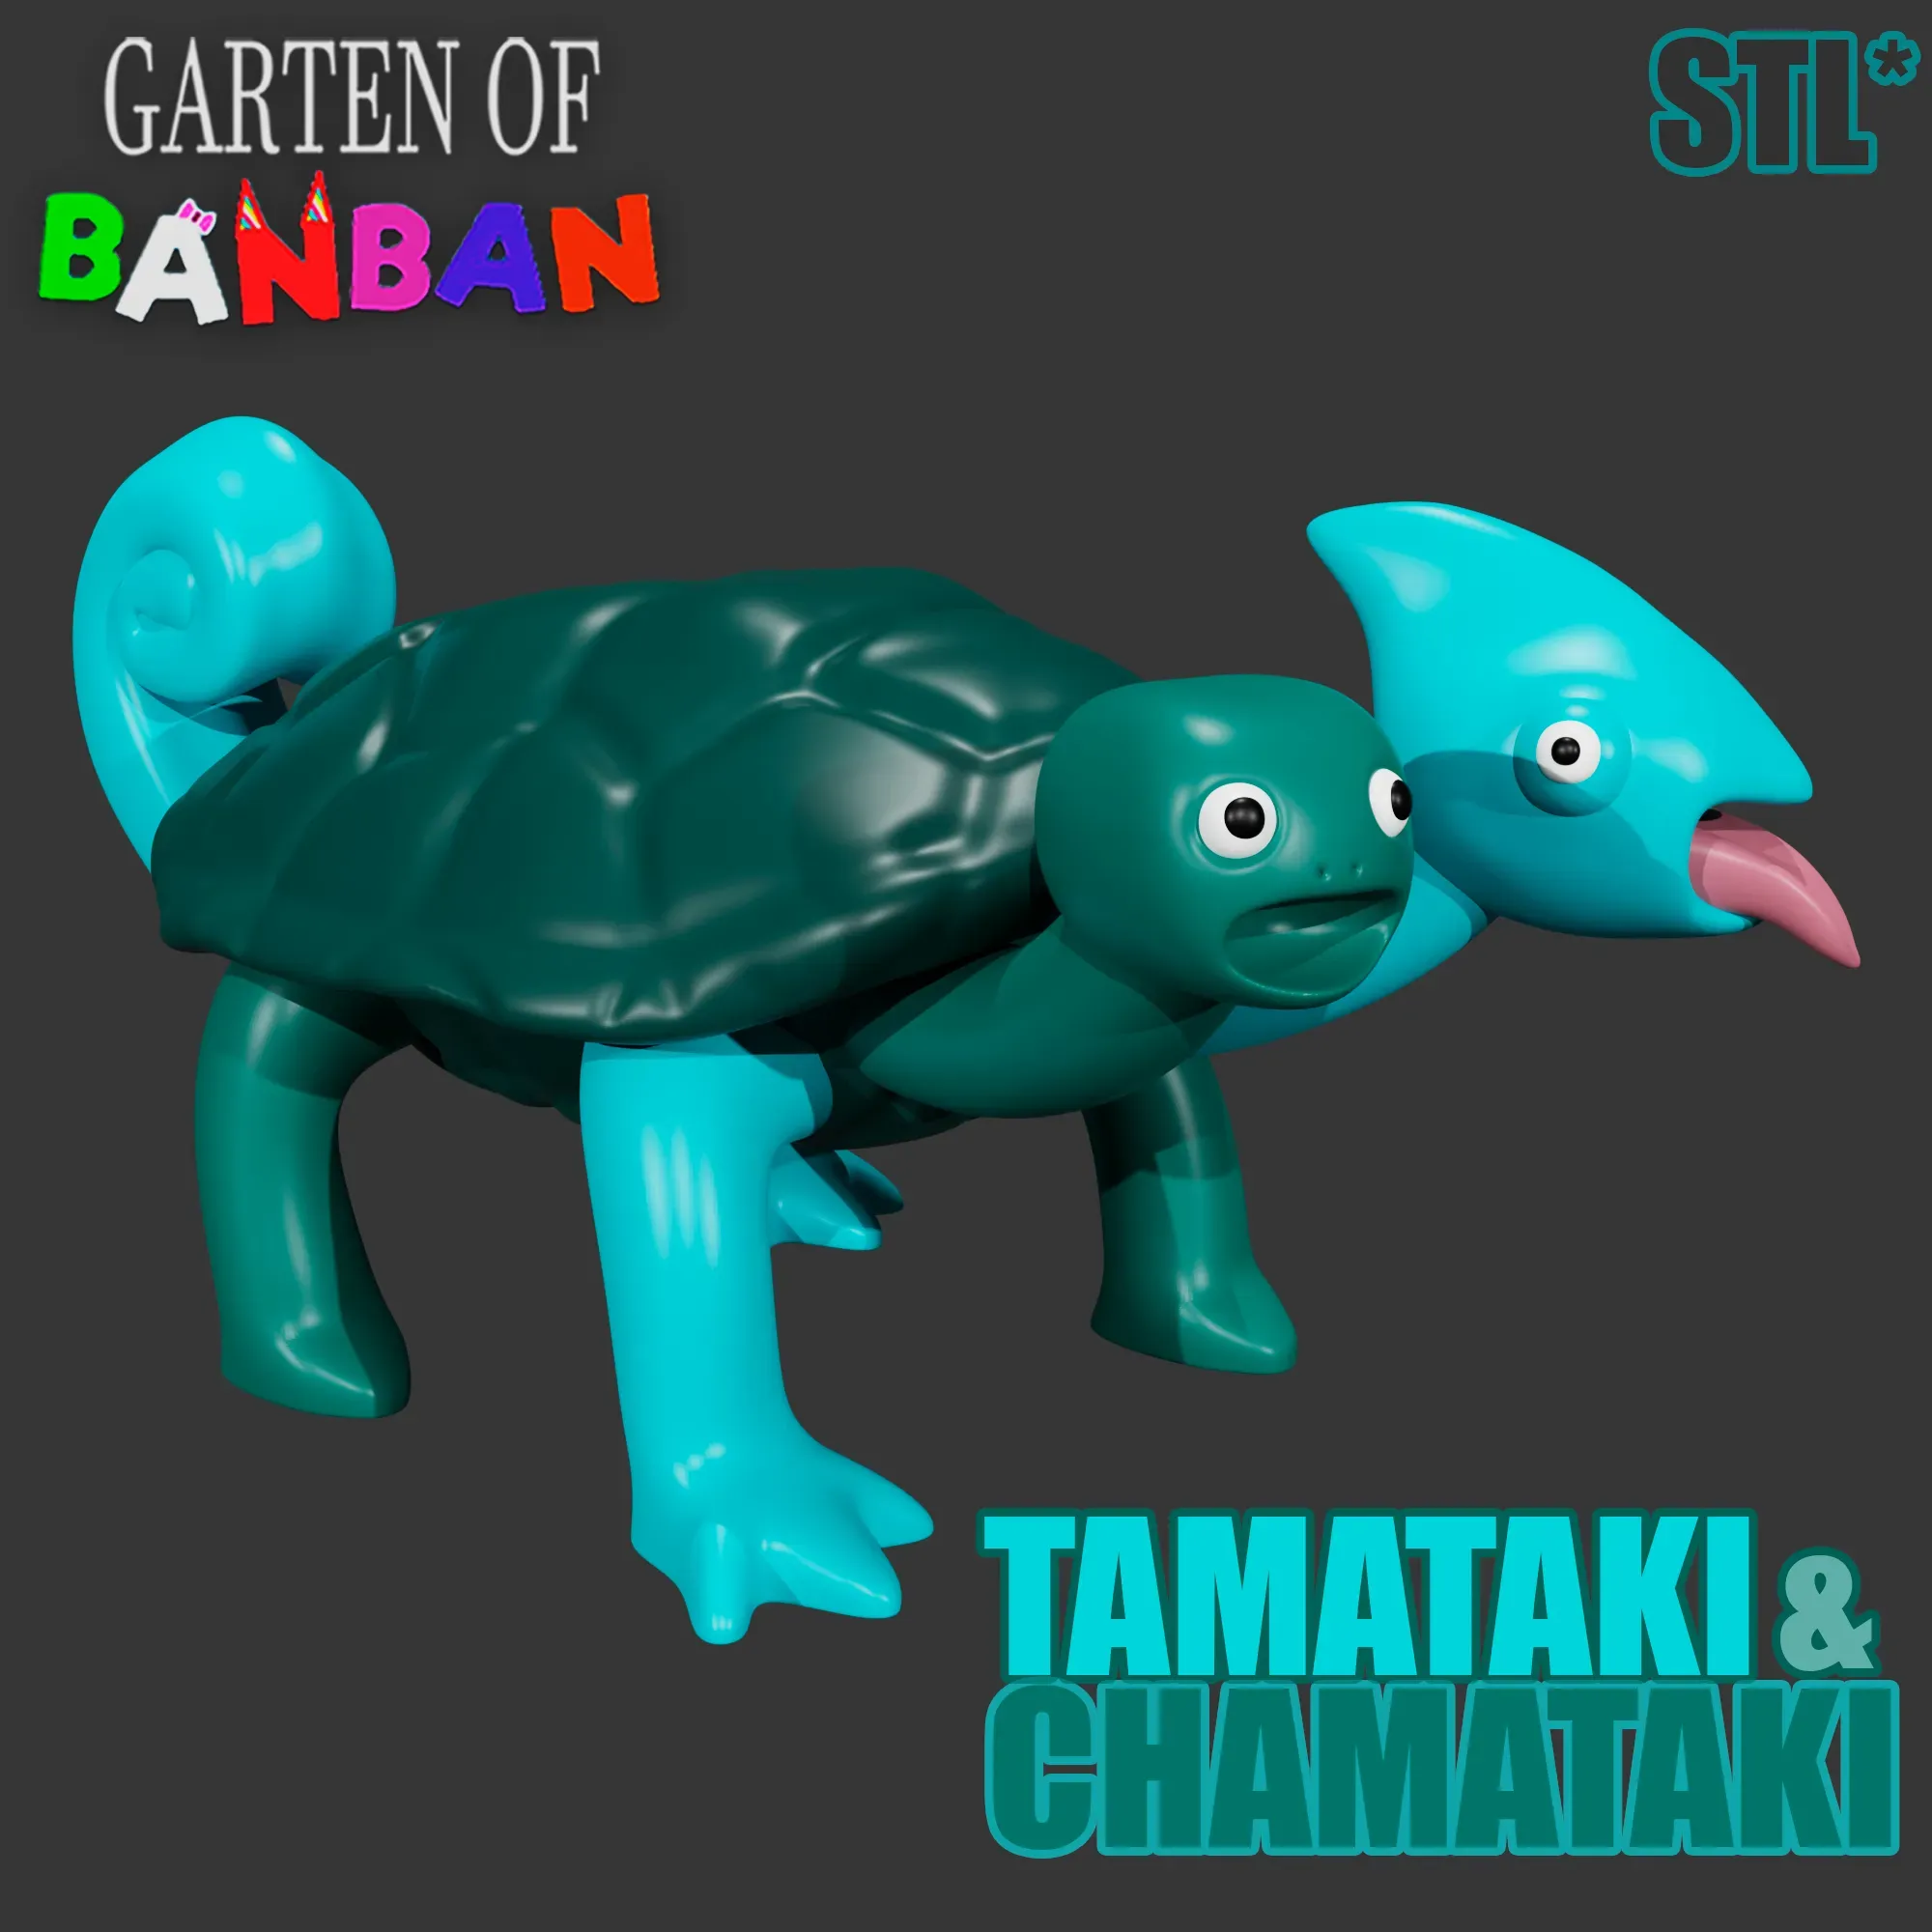 Tamataki & Chamataki, Garten of Banban Wiki